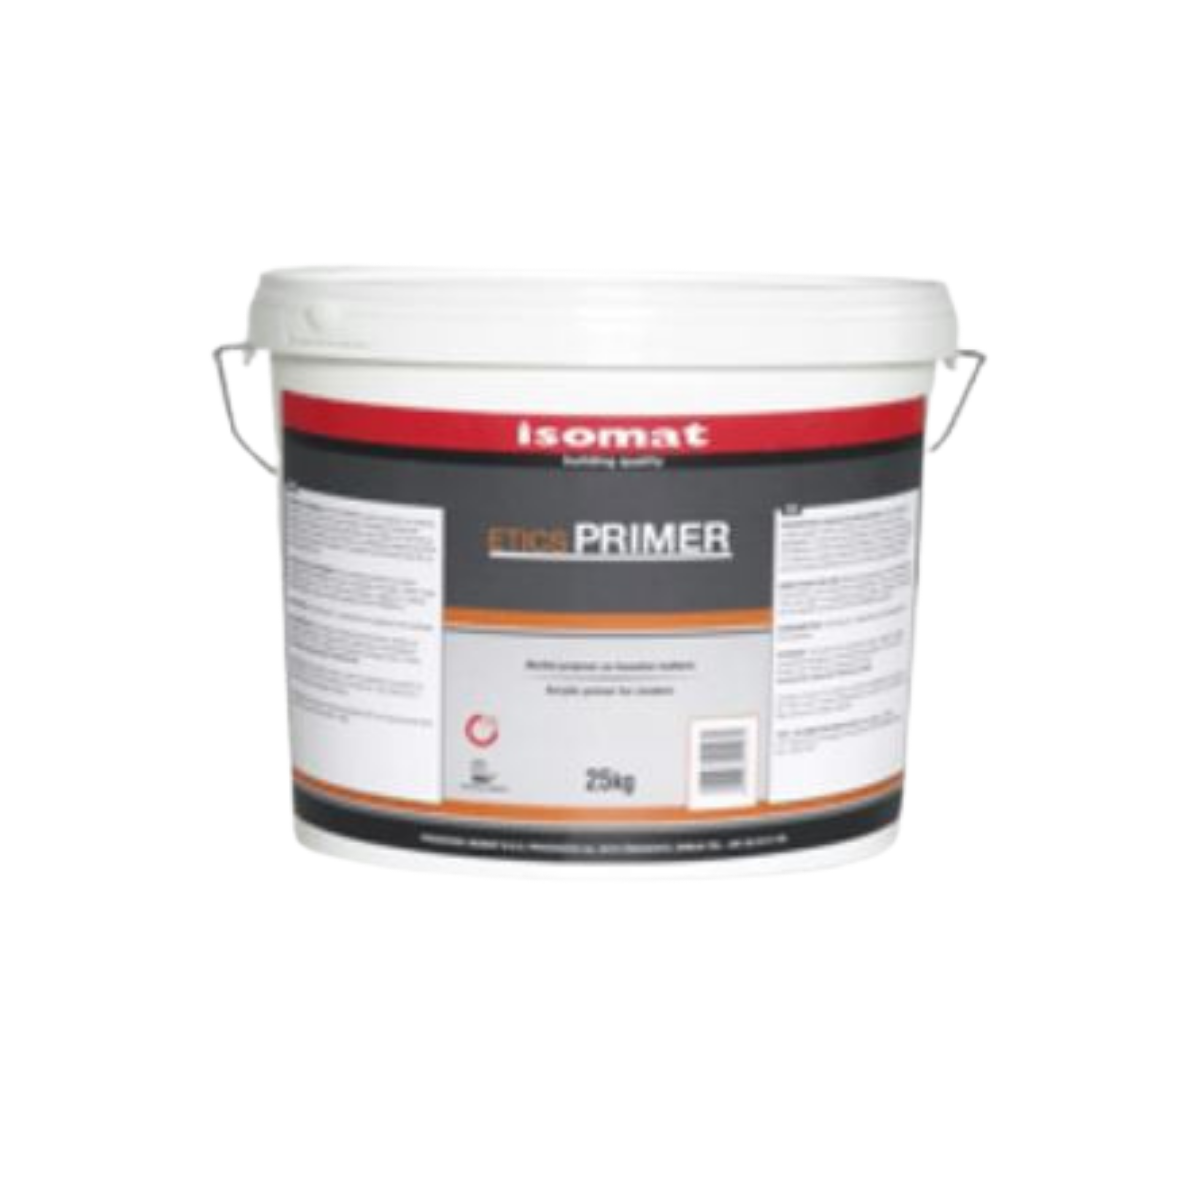 Primers for plastering - Acrylic primer Isomat Etics-Primer adhesion for plastering 094-2 25KG, https:maxbau.ro